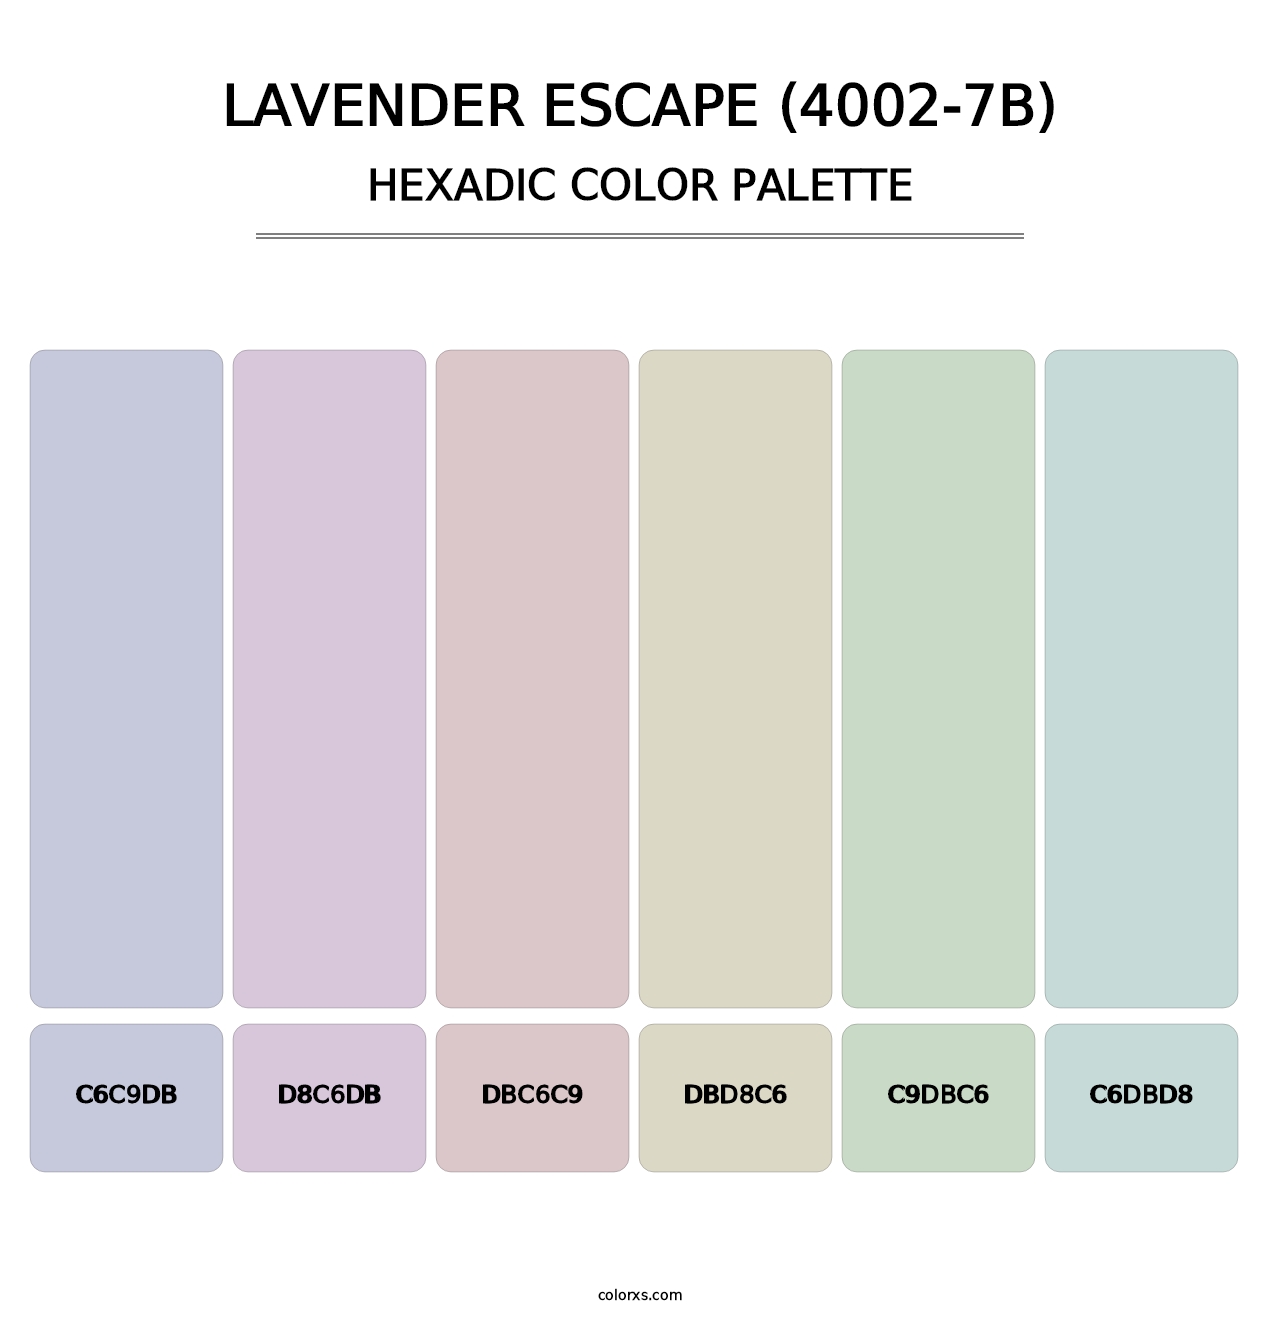 Lavender Escape (4002-7B) - Hexadic Color Palette